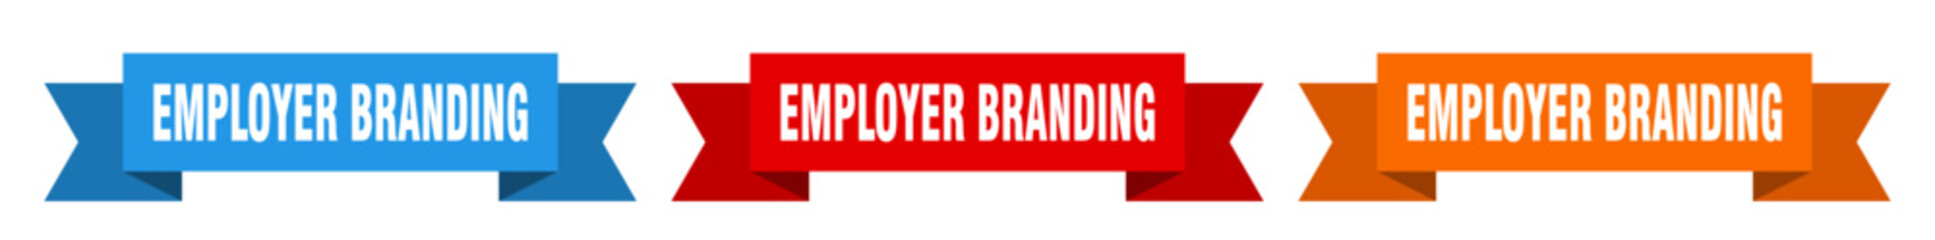 employer branding ribbon. employer branding isolated paper sign. banner